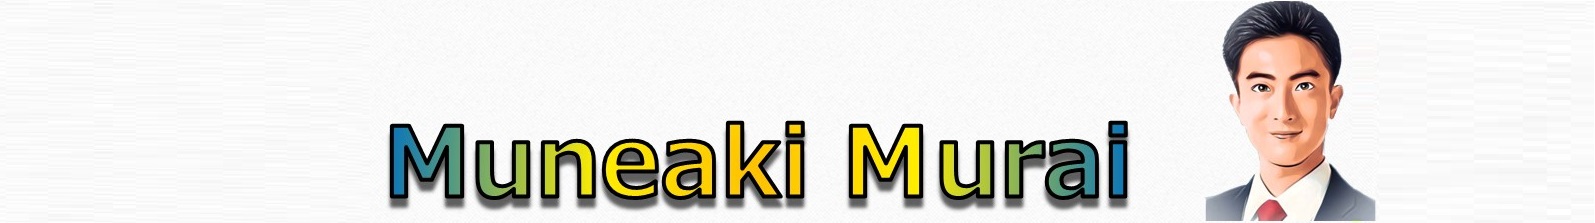 murai_muneaki banner